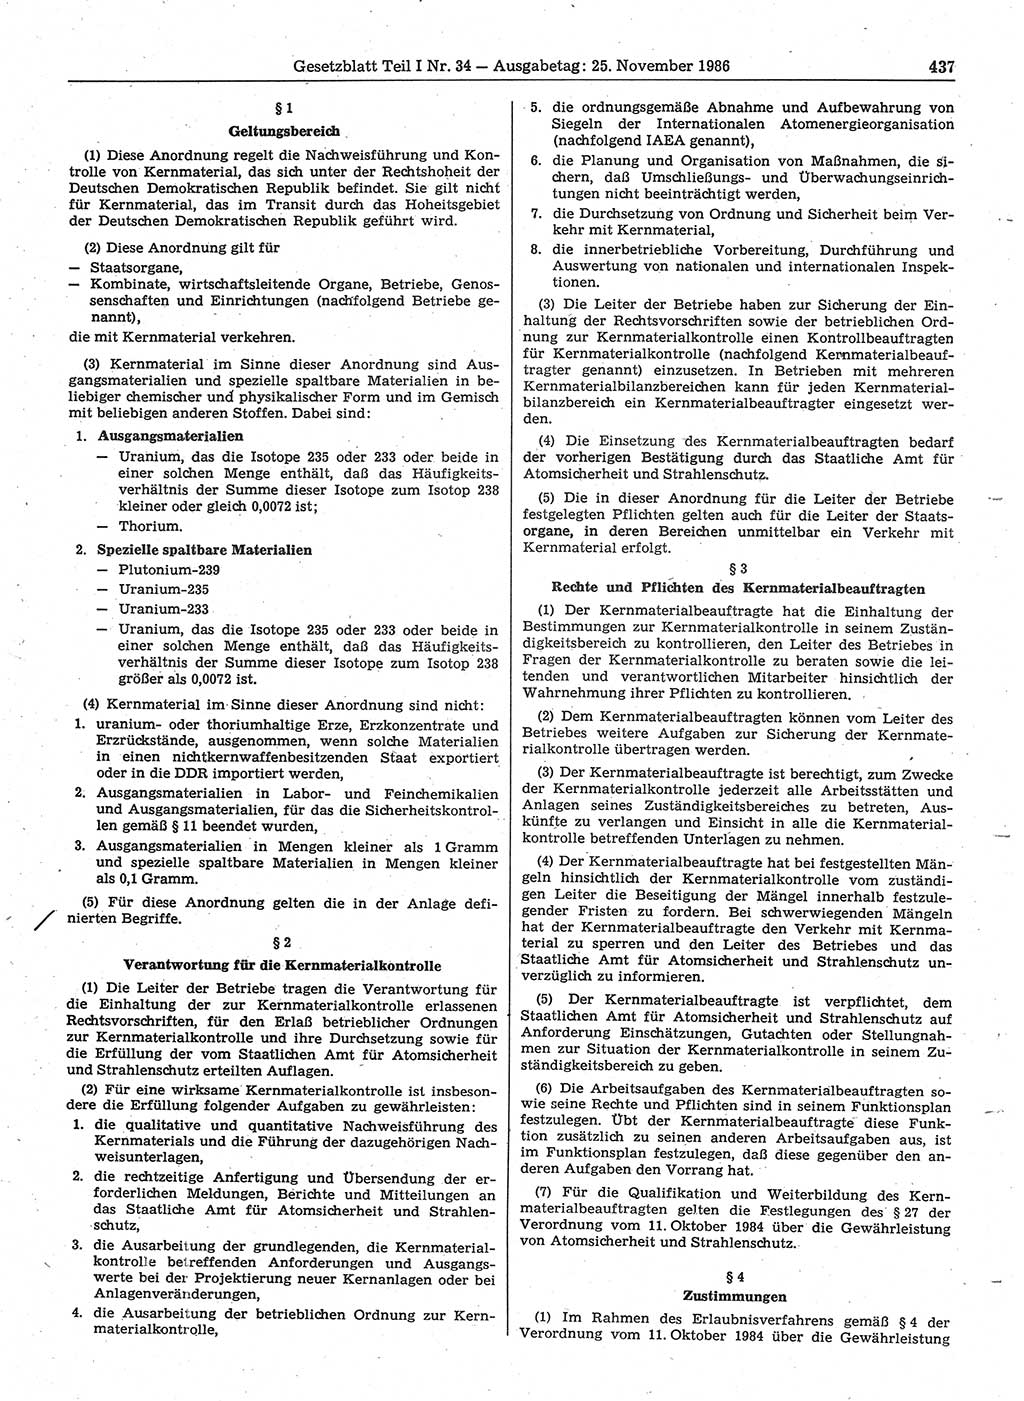 Gesetzblatt (GBl.) der Deutschen Demokratischen Republik (DDR) Teil Ⅰ 1986, Seite 437 (GBl. DDR Ⅰ 1986, S. 437)